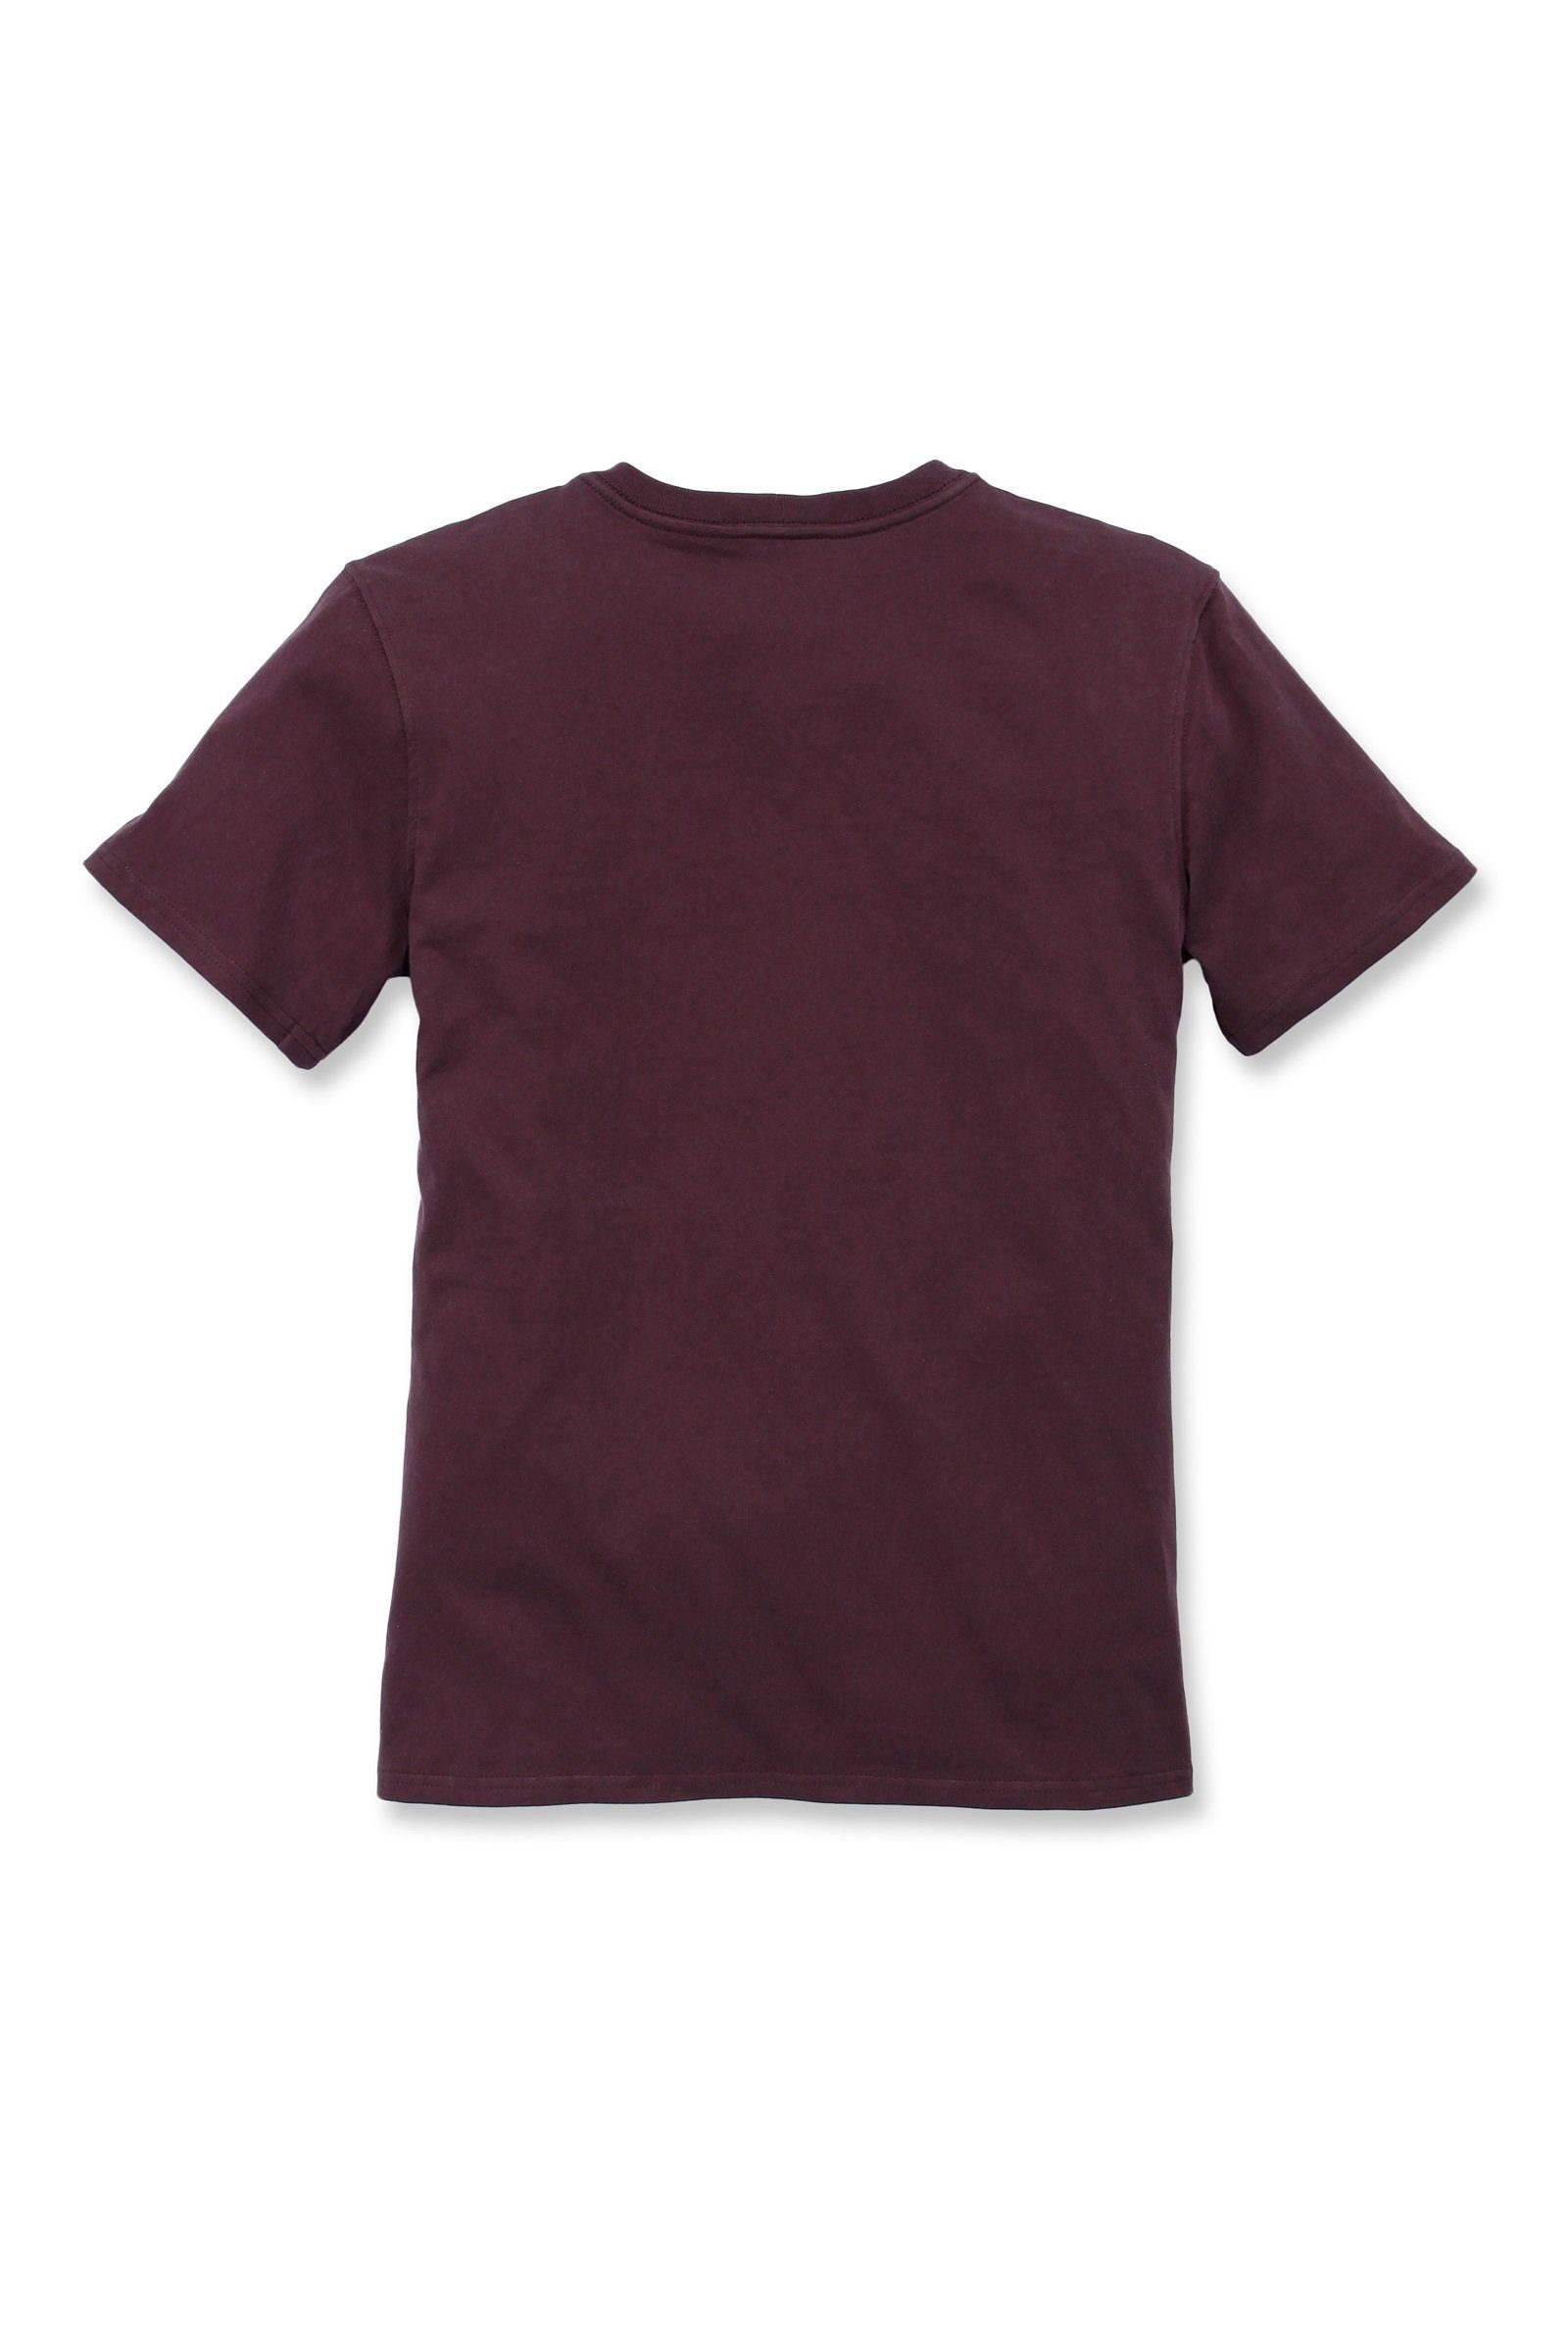 Carhartt T-Shirt Carhartt Short-Sleeve deep Pocket Heavyweight Damen Fit wine Loose T-Shirt Adult